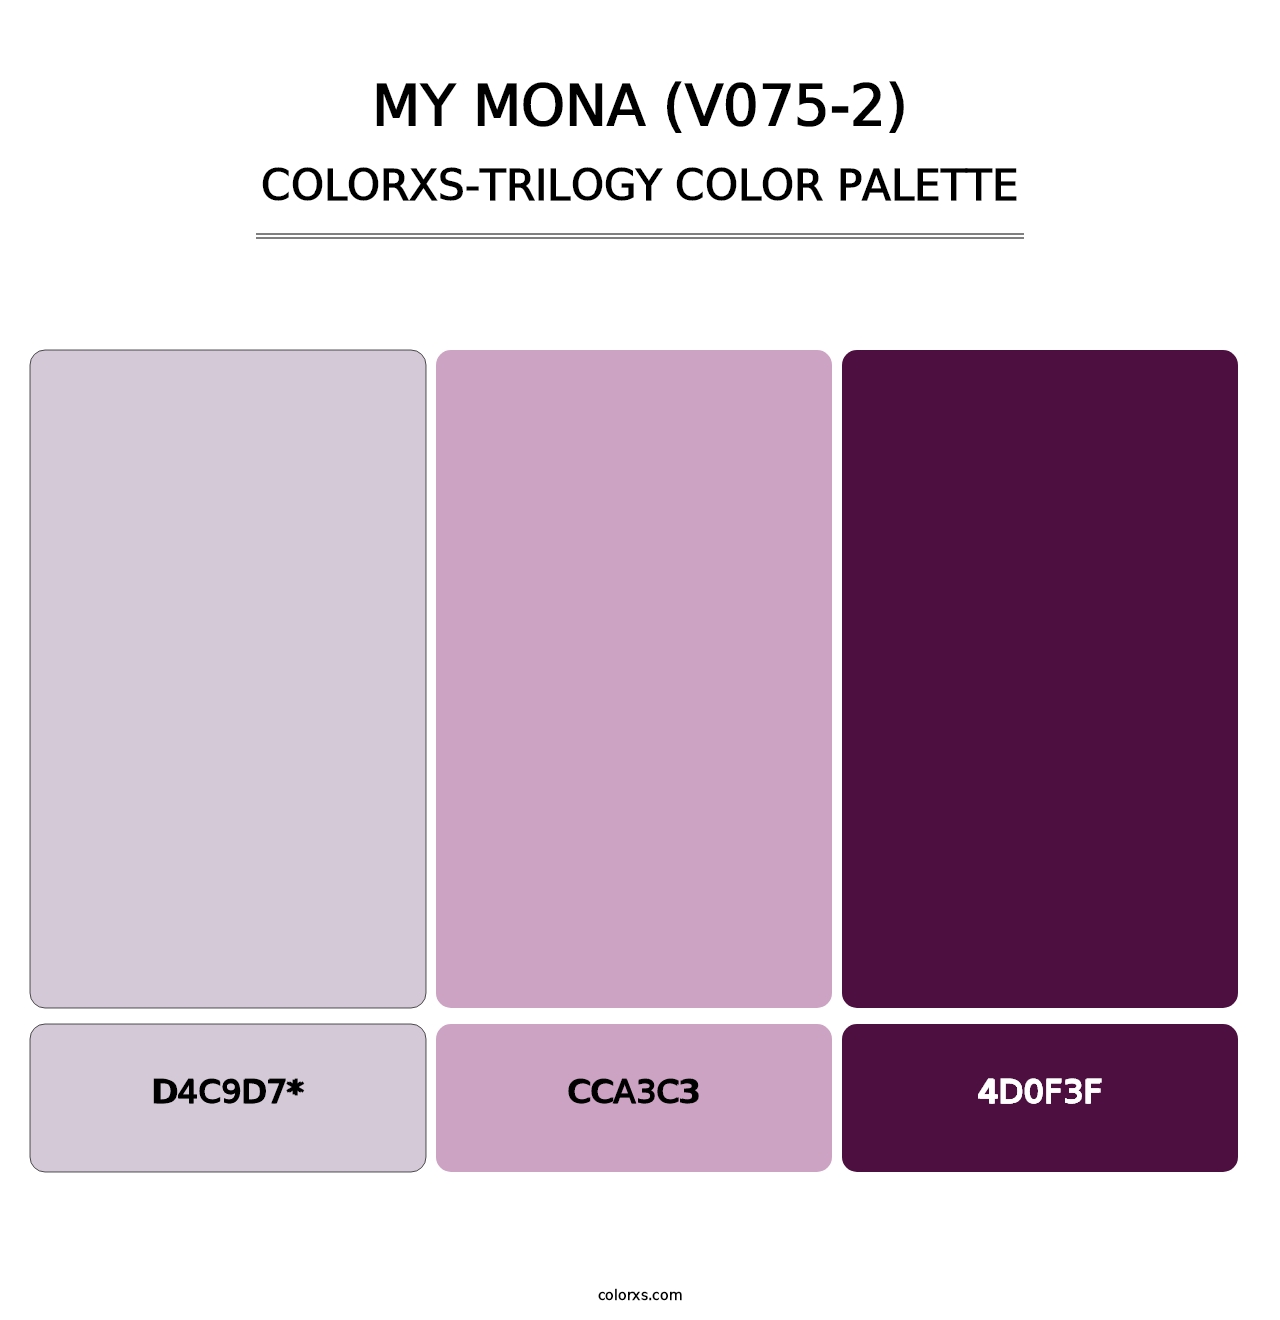 My Mona (V075-2) - Colorxs Trilogy Palette